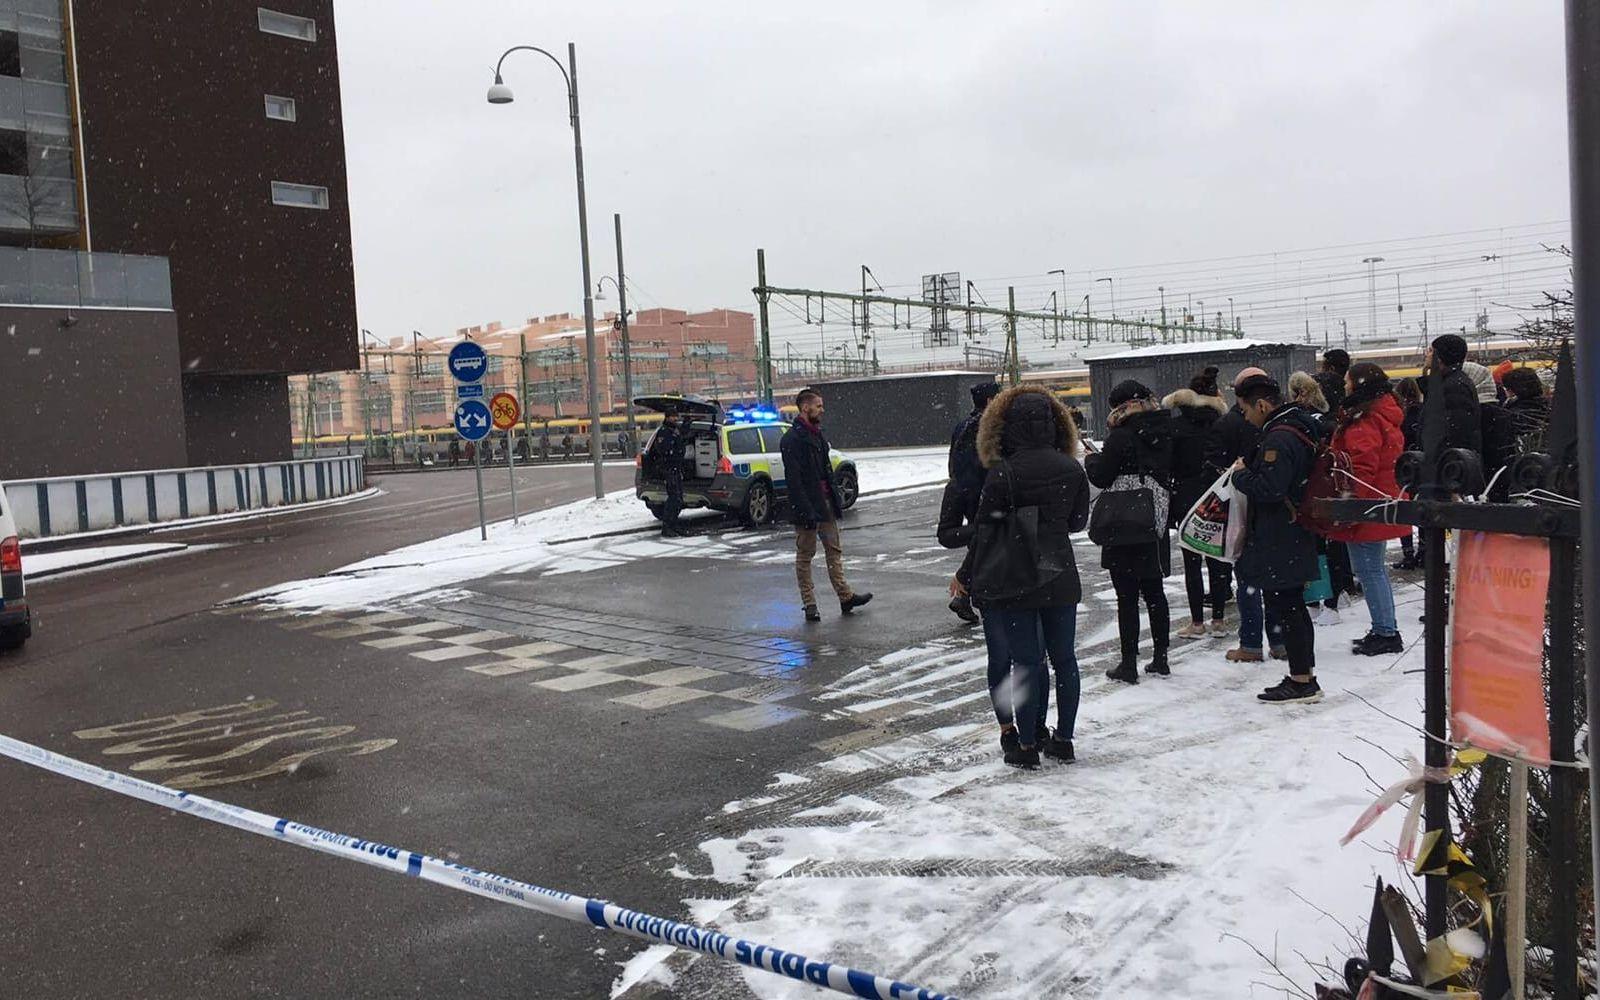 All tågtrafik från och till Göteborg stoppades efter bombhotet. Vi 17.30-tiden på torsdagen den 9 februari släpptes tågtrafiken på igen.